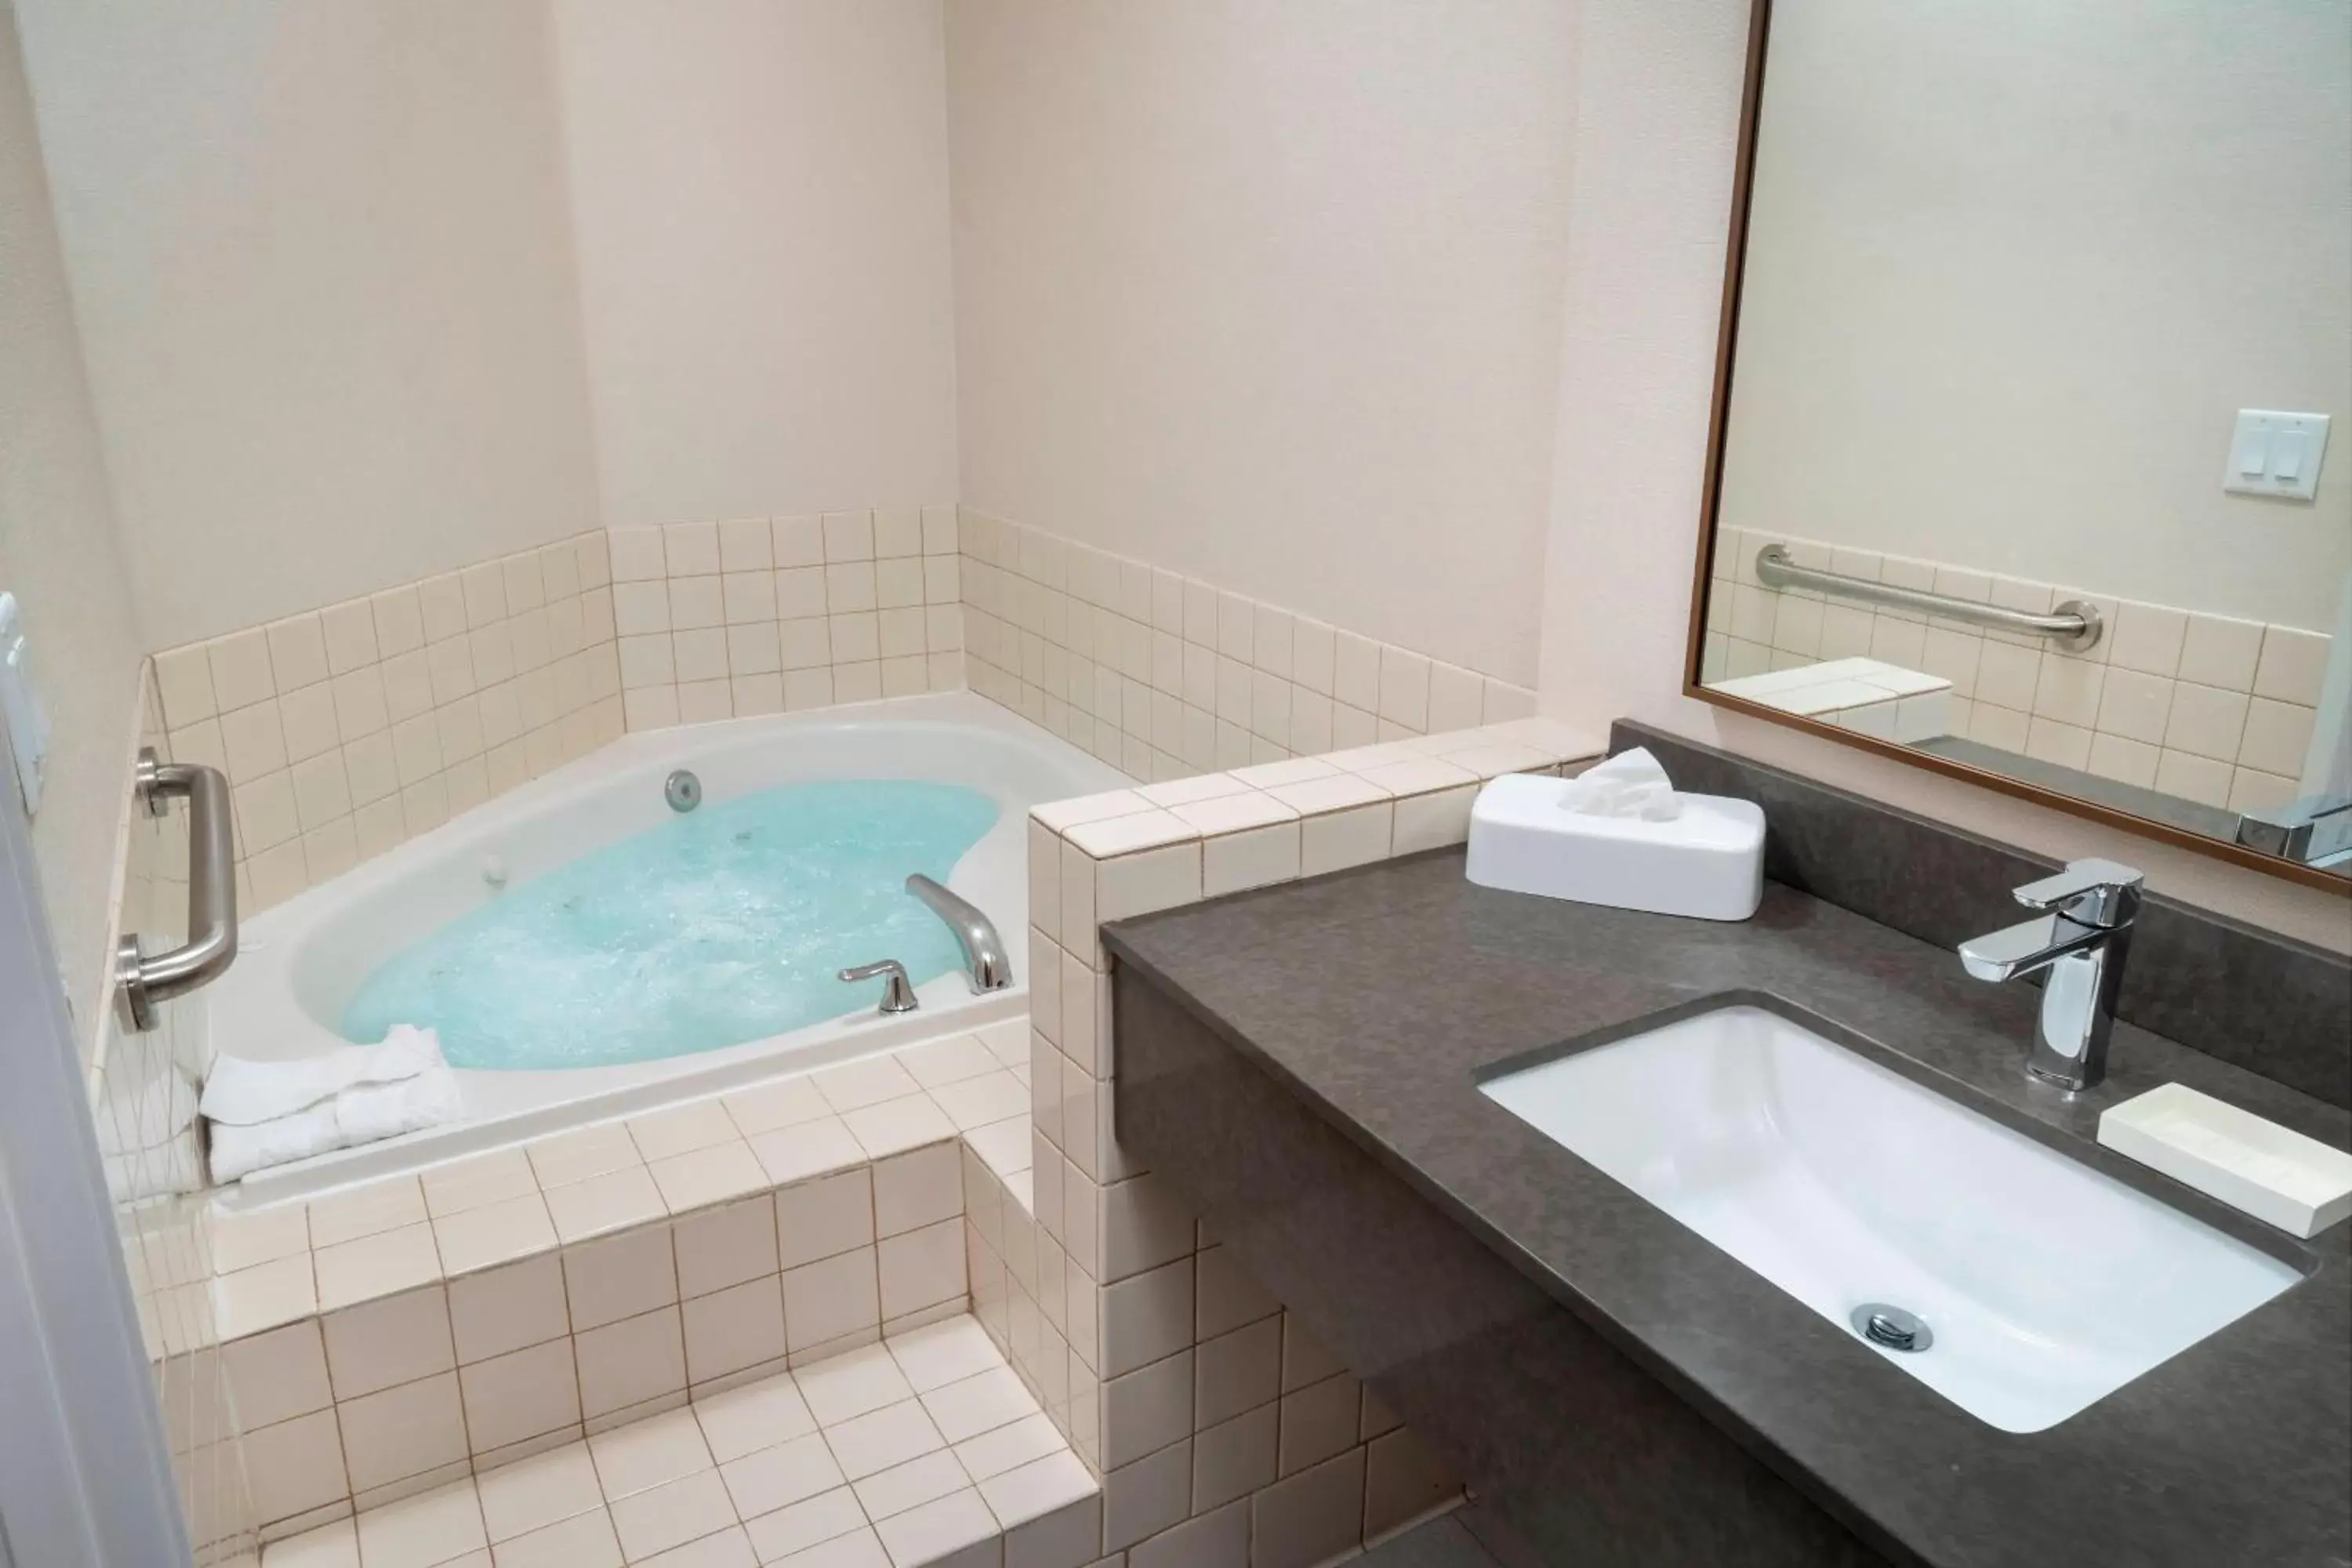 Swimming pool, Bathroom in Fairfield Inn & Suites Bend Downtown